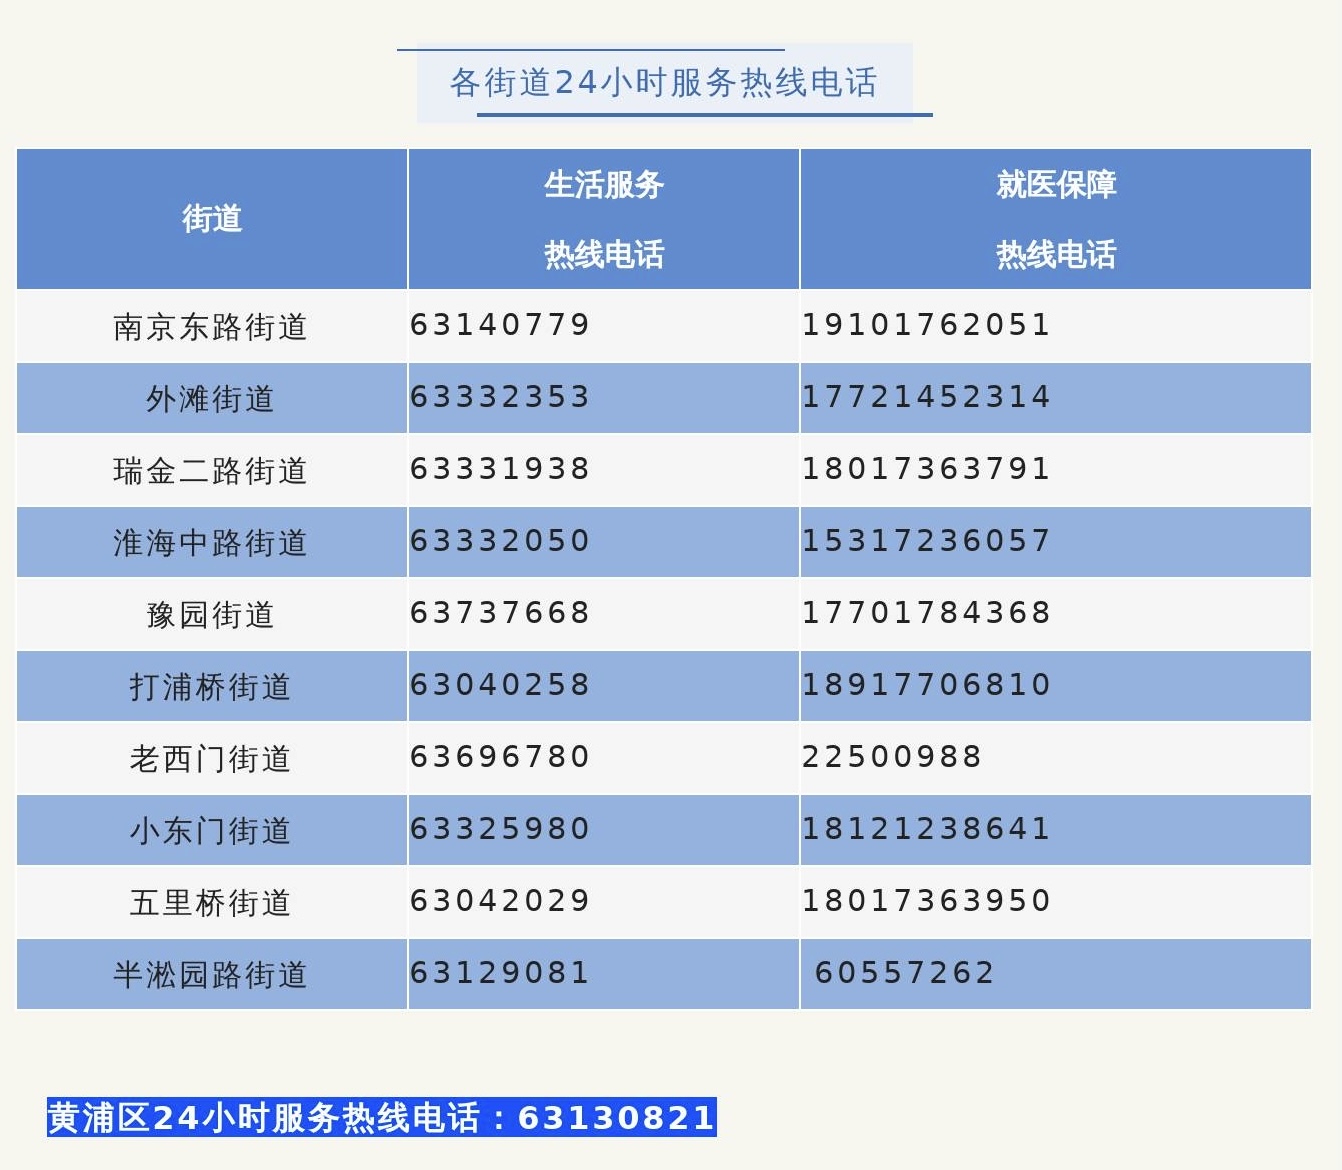 本文圖片均來自上海各區微信公眾號